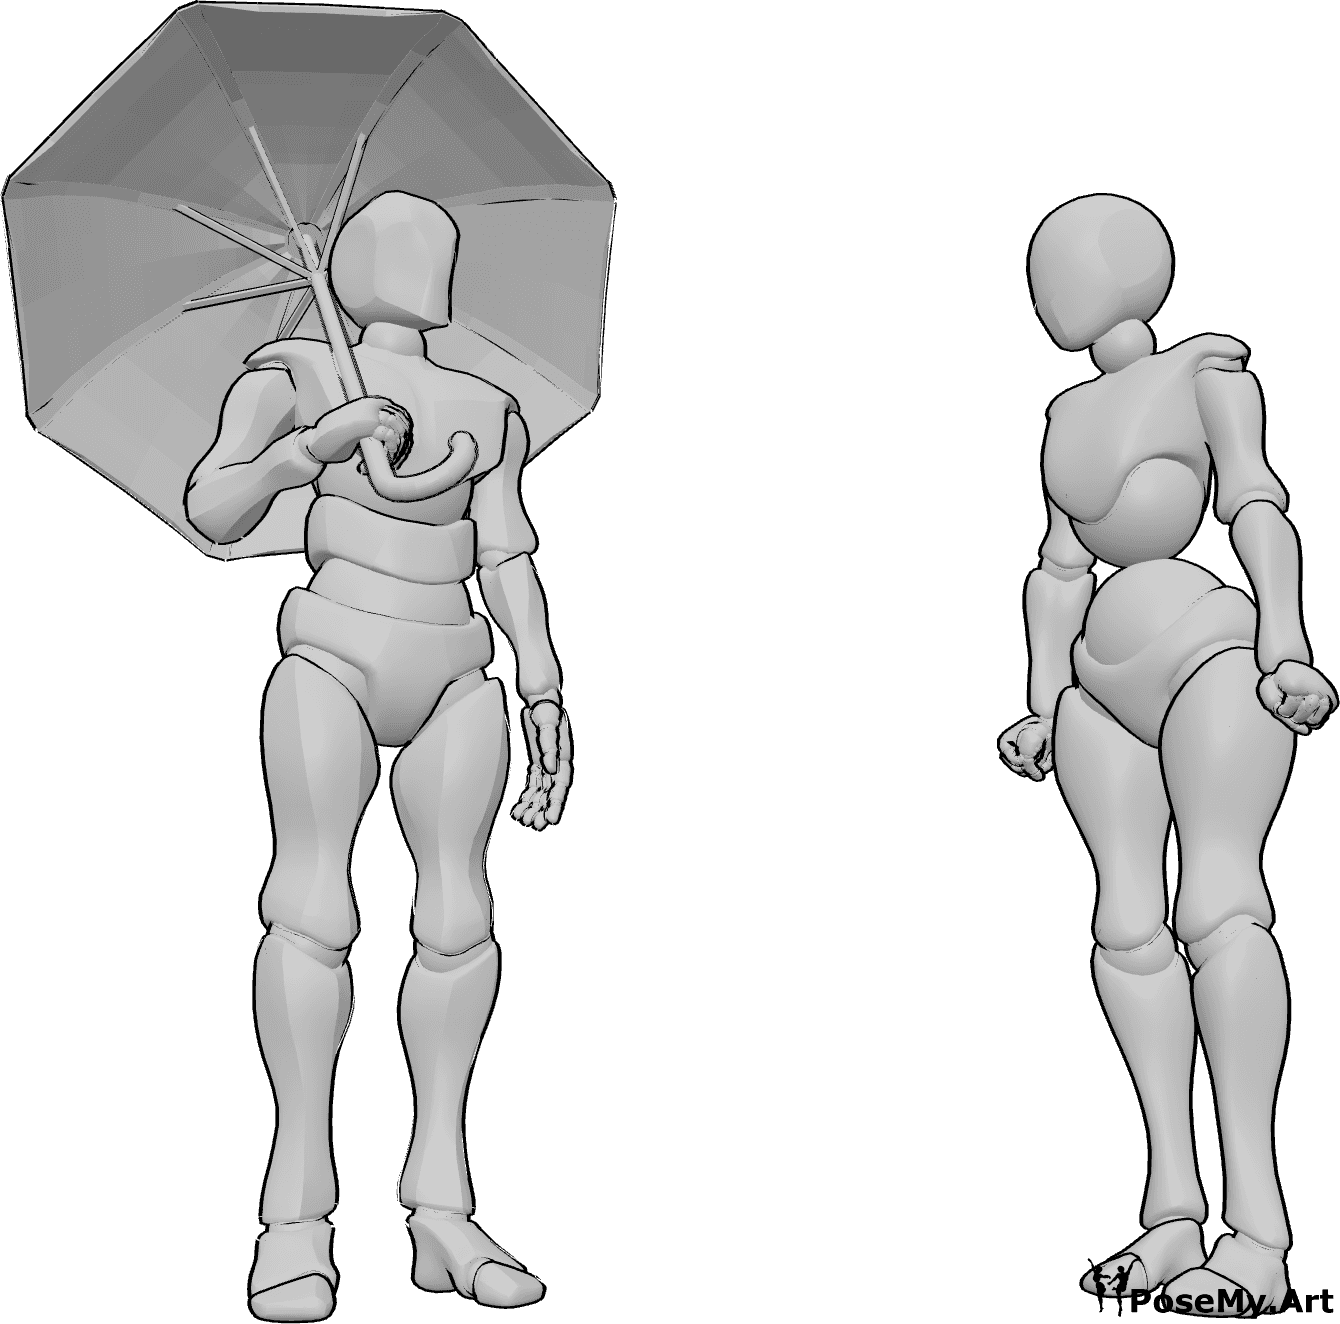 Referencia de poses- Mujer sin paraguas - El hombre sostiene un paraguas y mira a la mujer, que está enfadada.